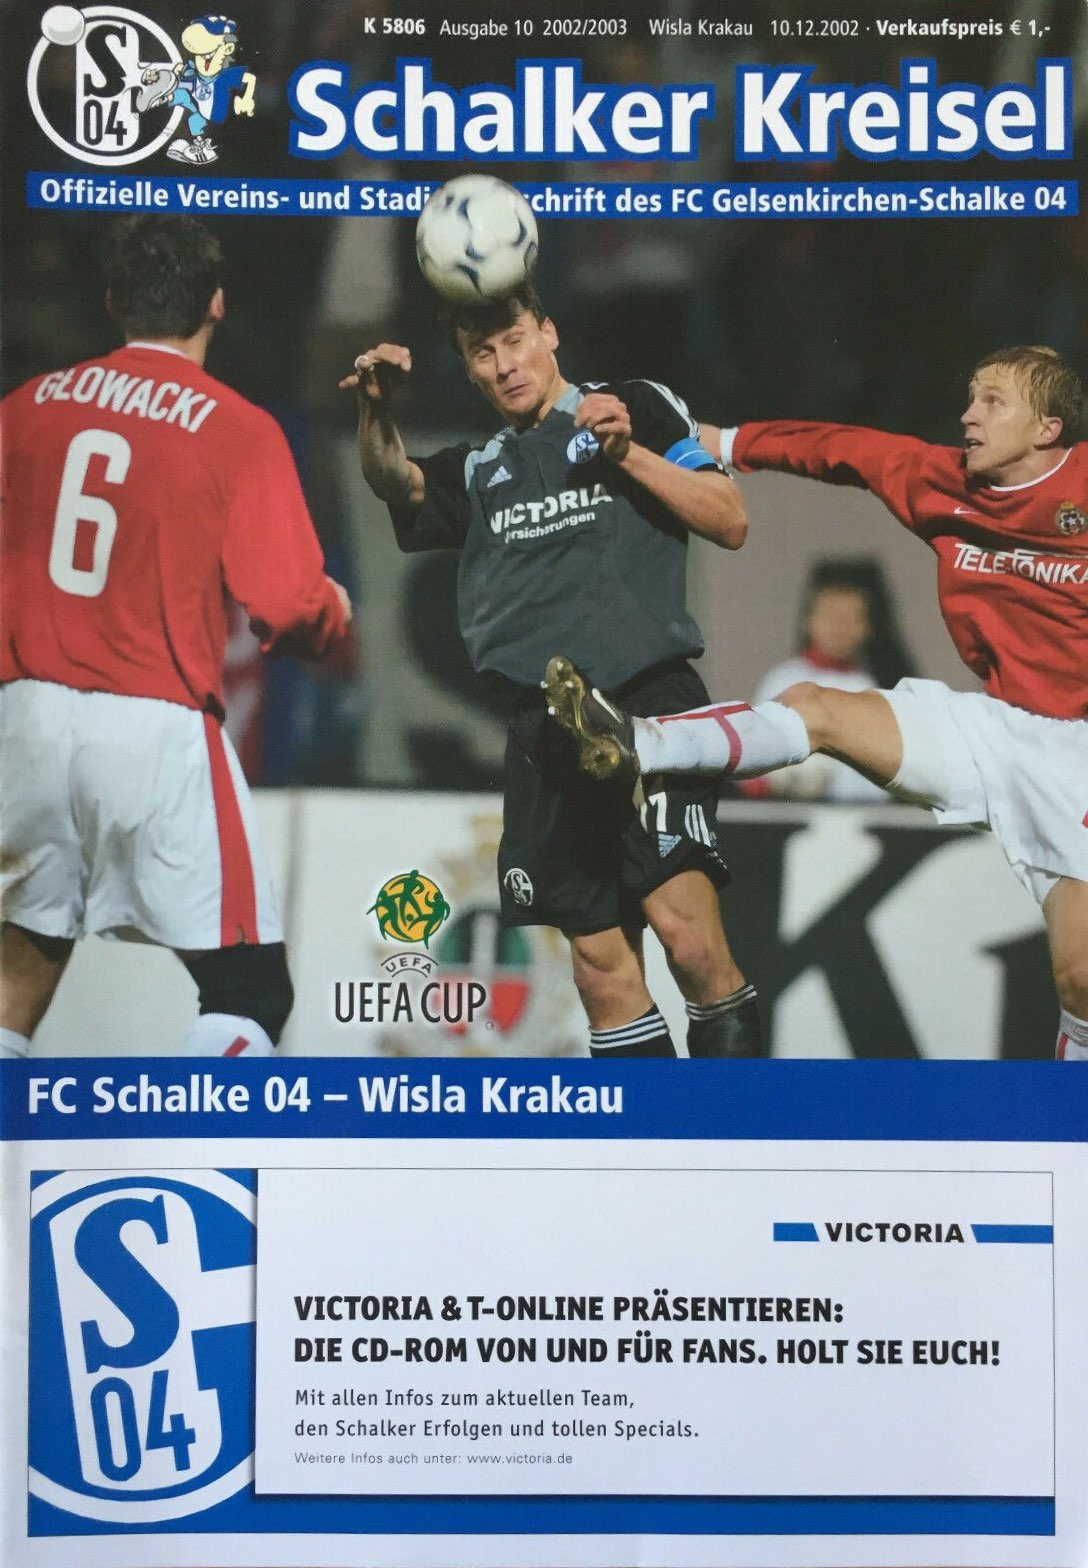 Program meczowy Schalke 04 Gelsenkirchen - Wisła Kraków 1:4 (10.12.2002)